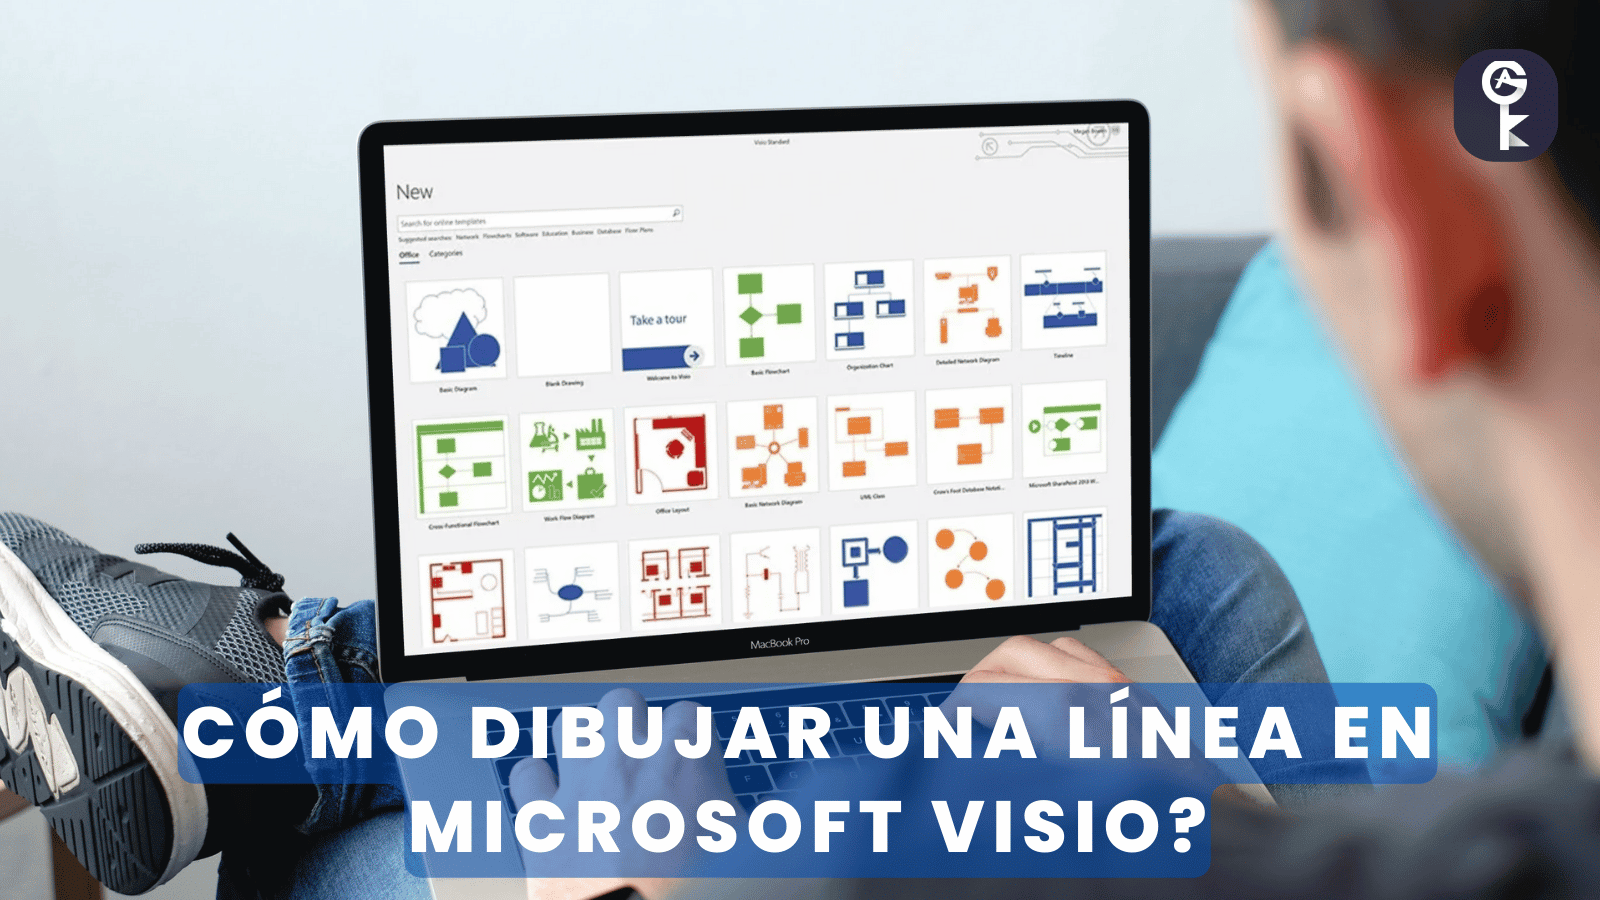 Cómo dibujar una línea en Microsoft Visio?